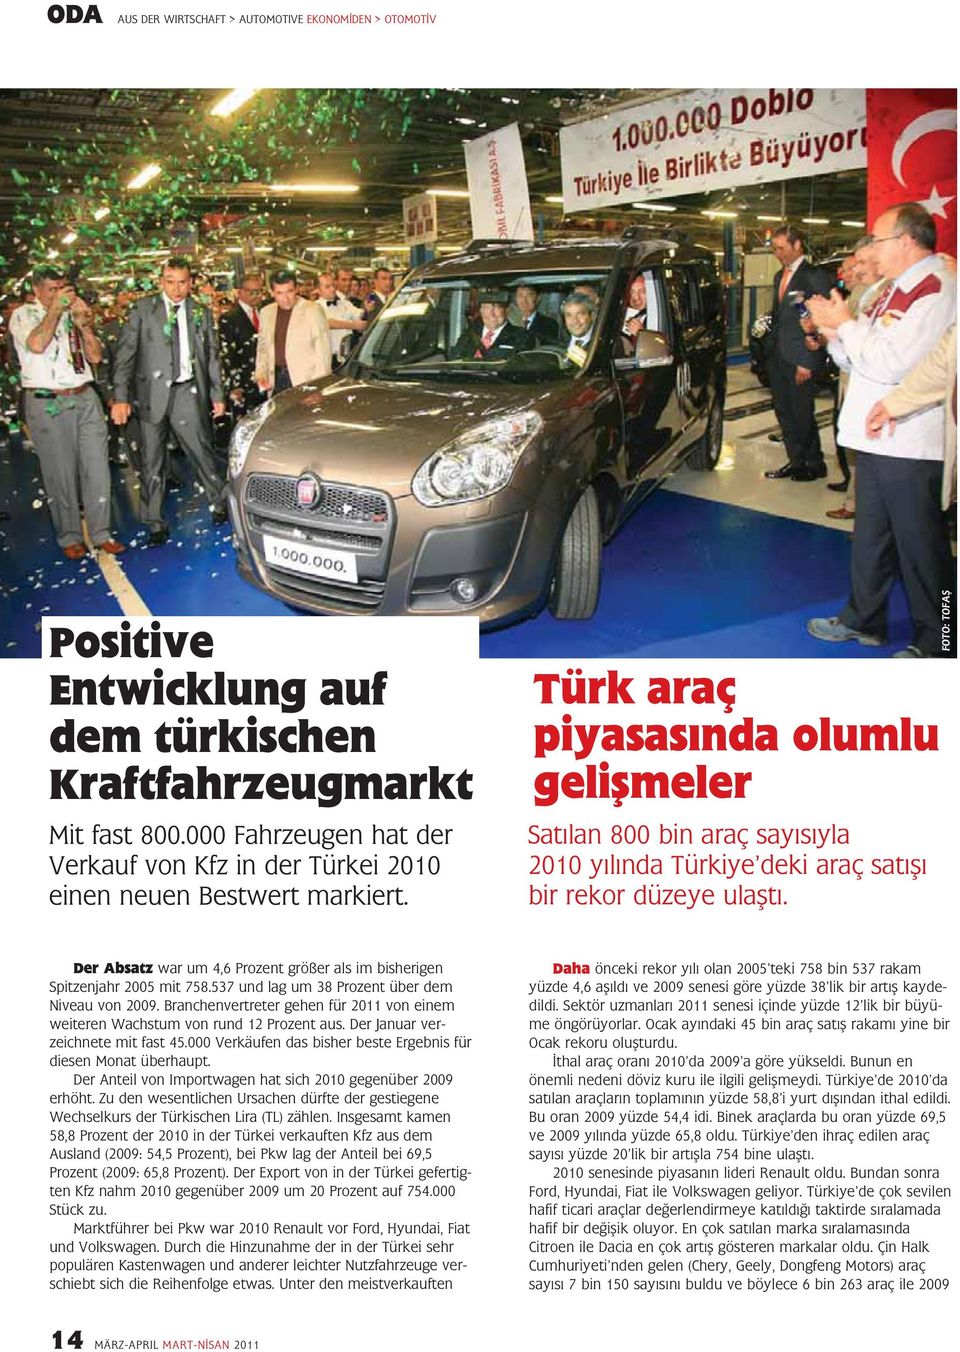 Türk araç piyasasında olumlu gelişmeler Satılan 800 bin araç sayısıyla 2010 yılında Türkiye deki araç satışı bir rekor düzeye ulaştı.